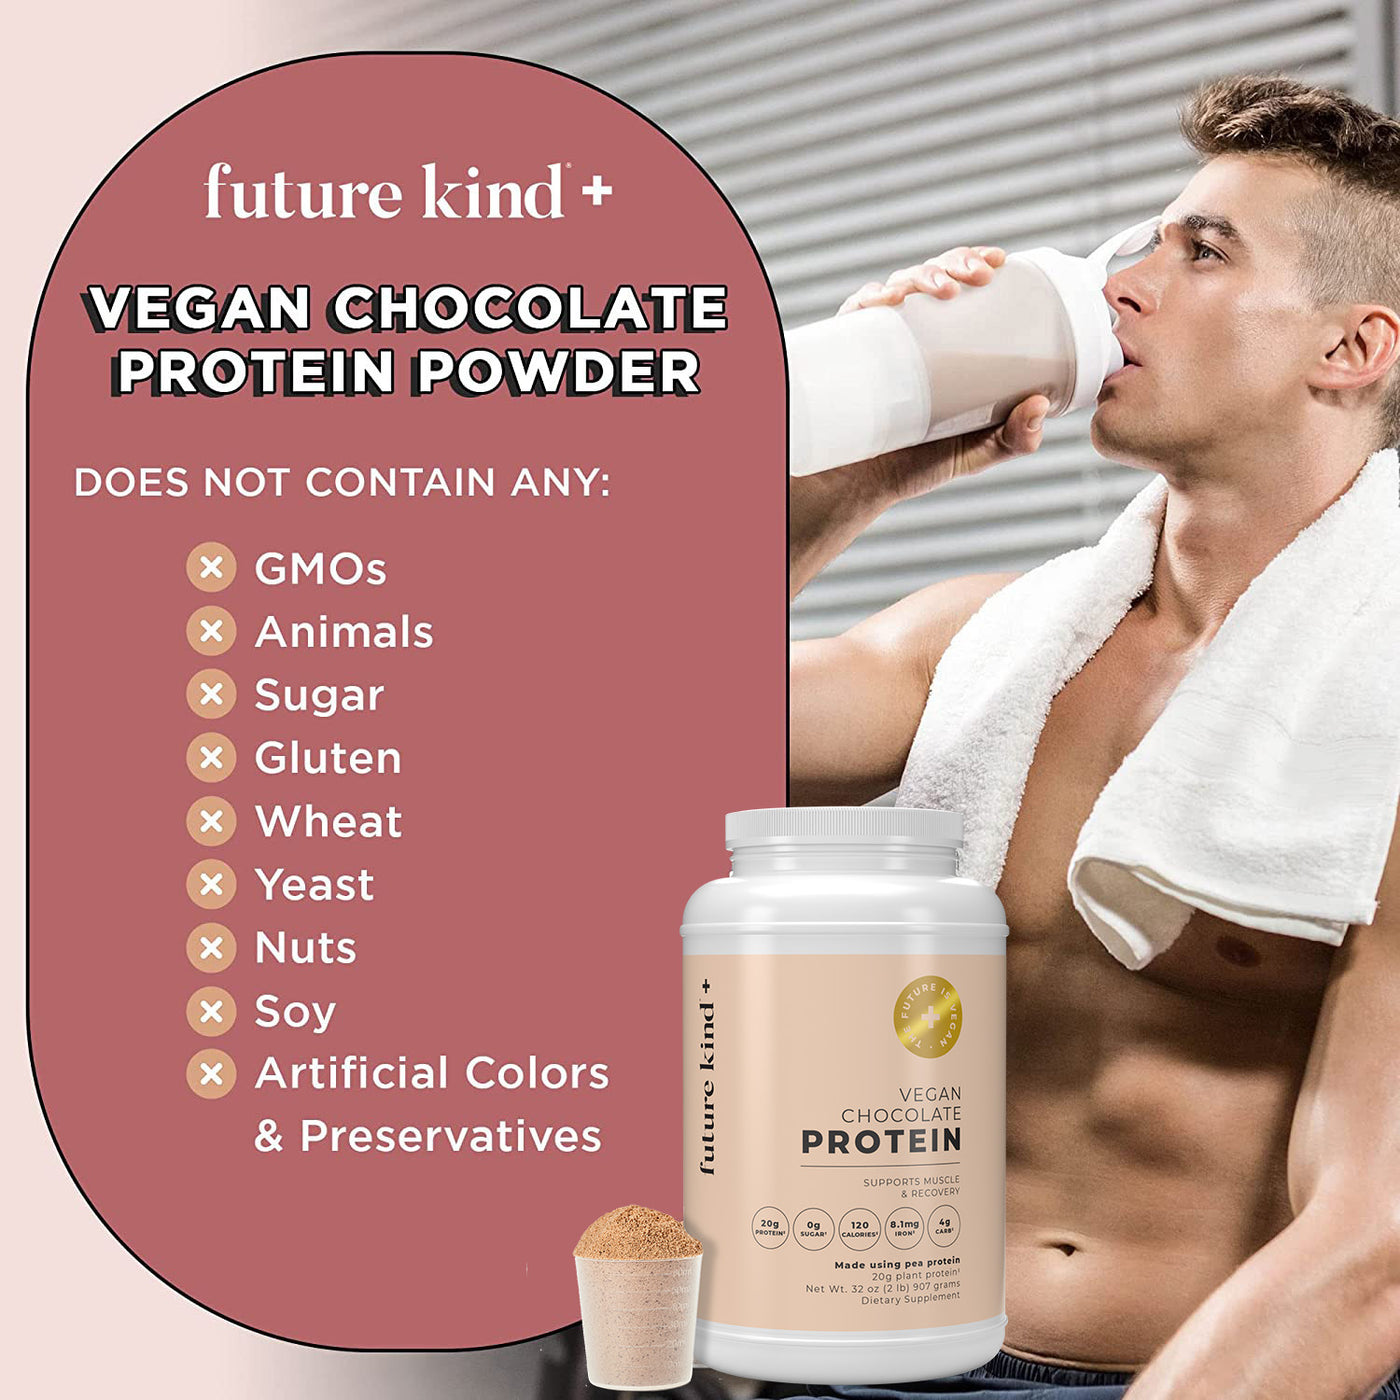 Chocolate Vegan Protein Powder Allergens